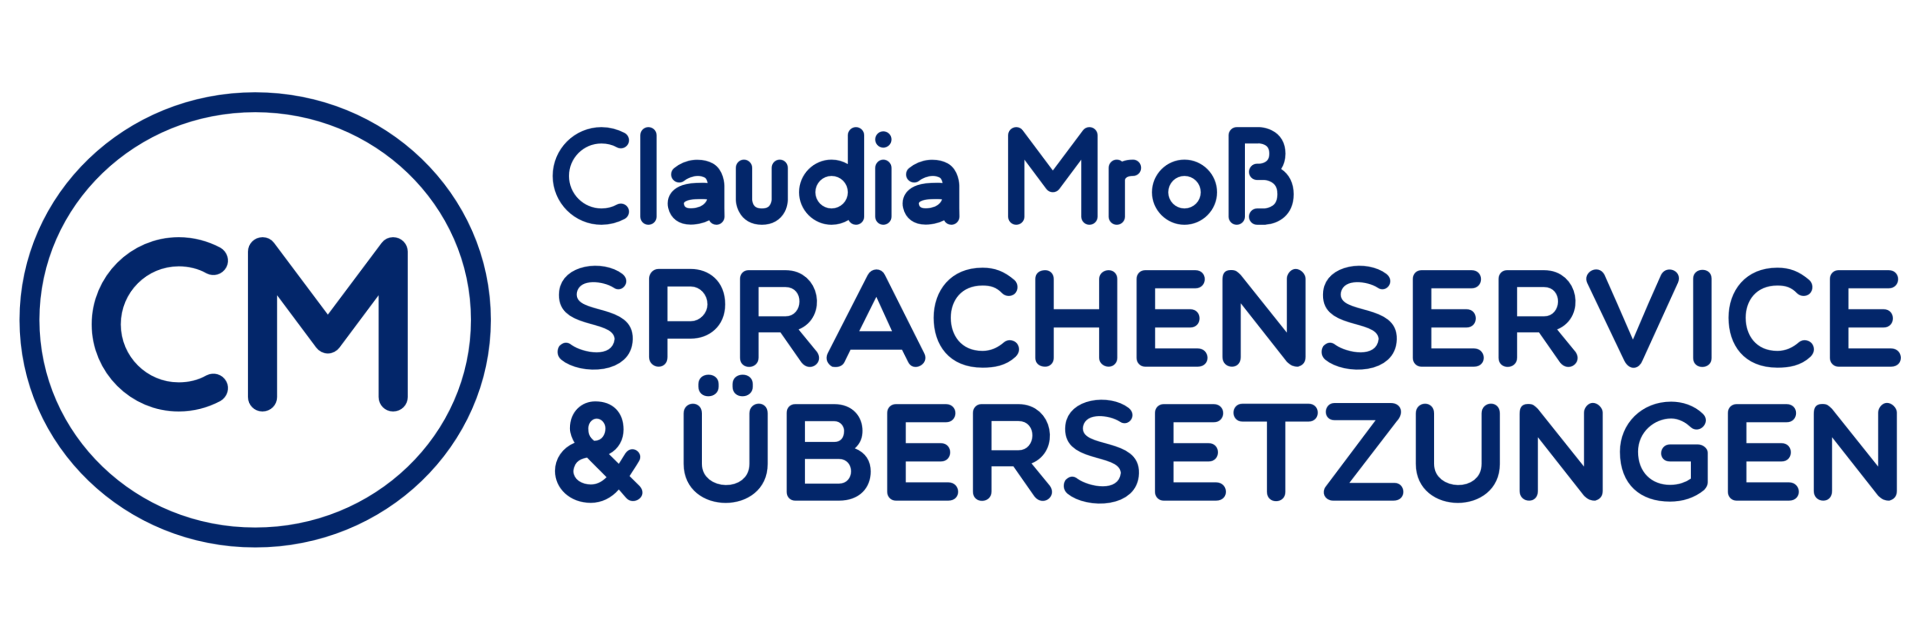 Claudia Mroß Sprachenservice und Übersetzungen